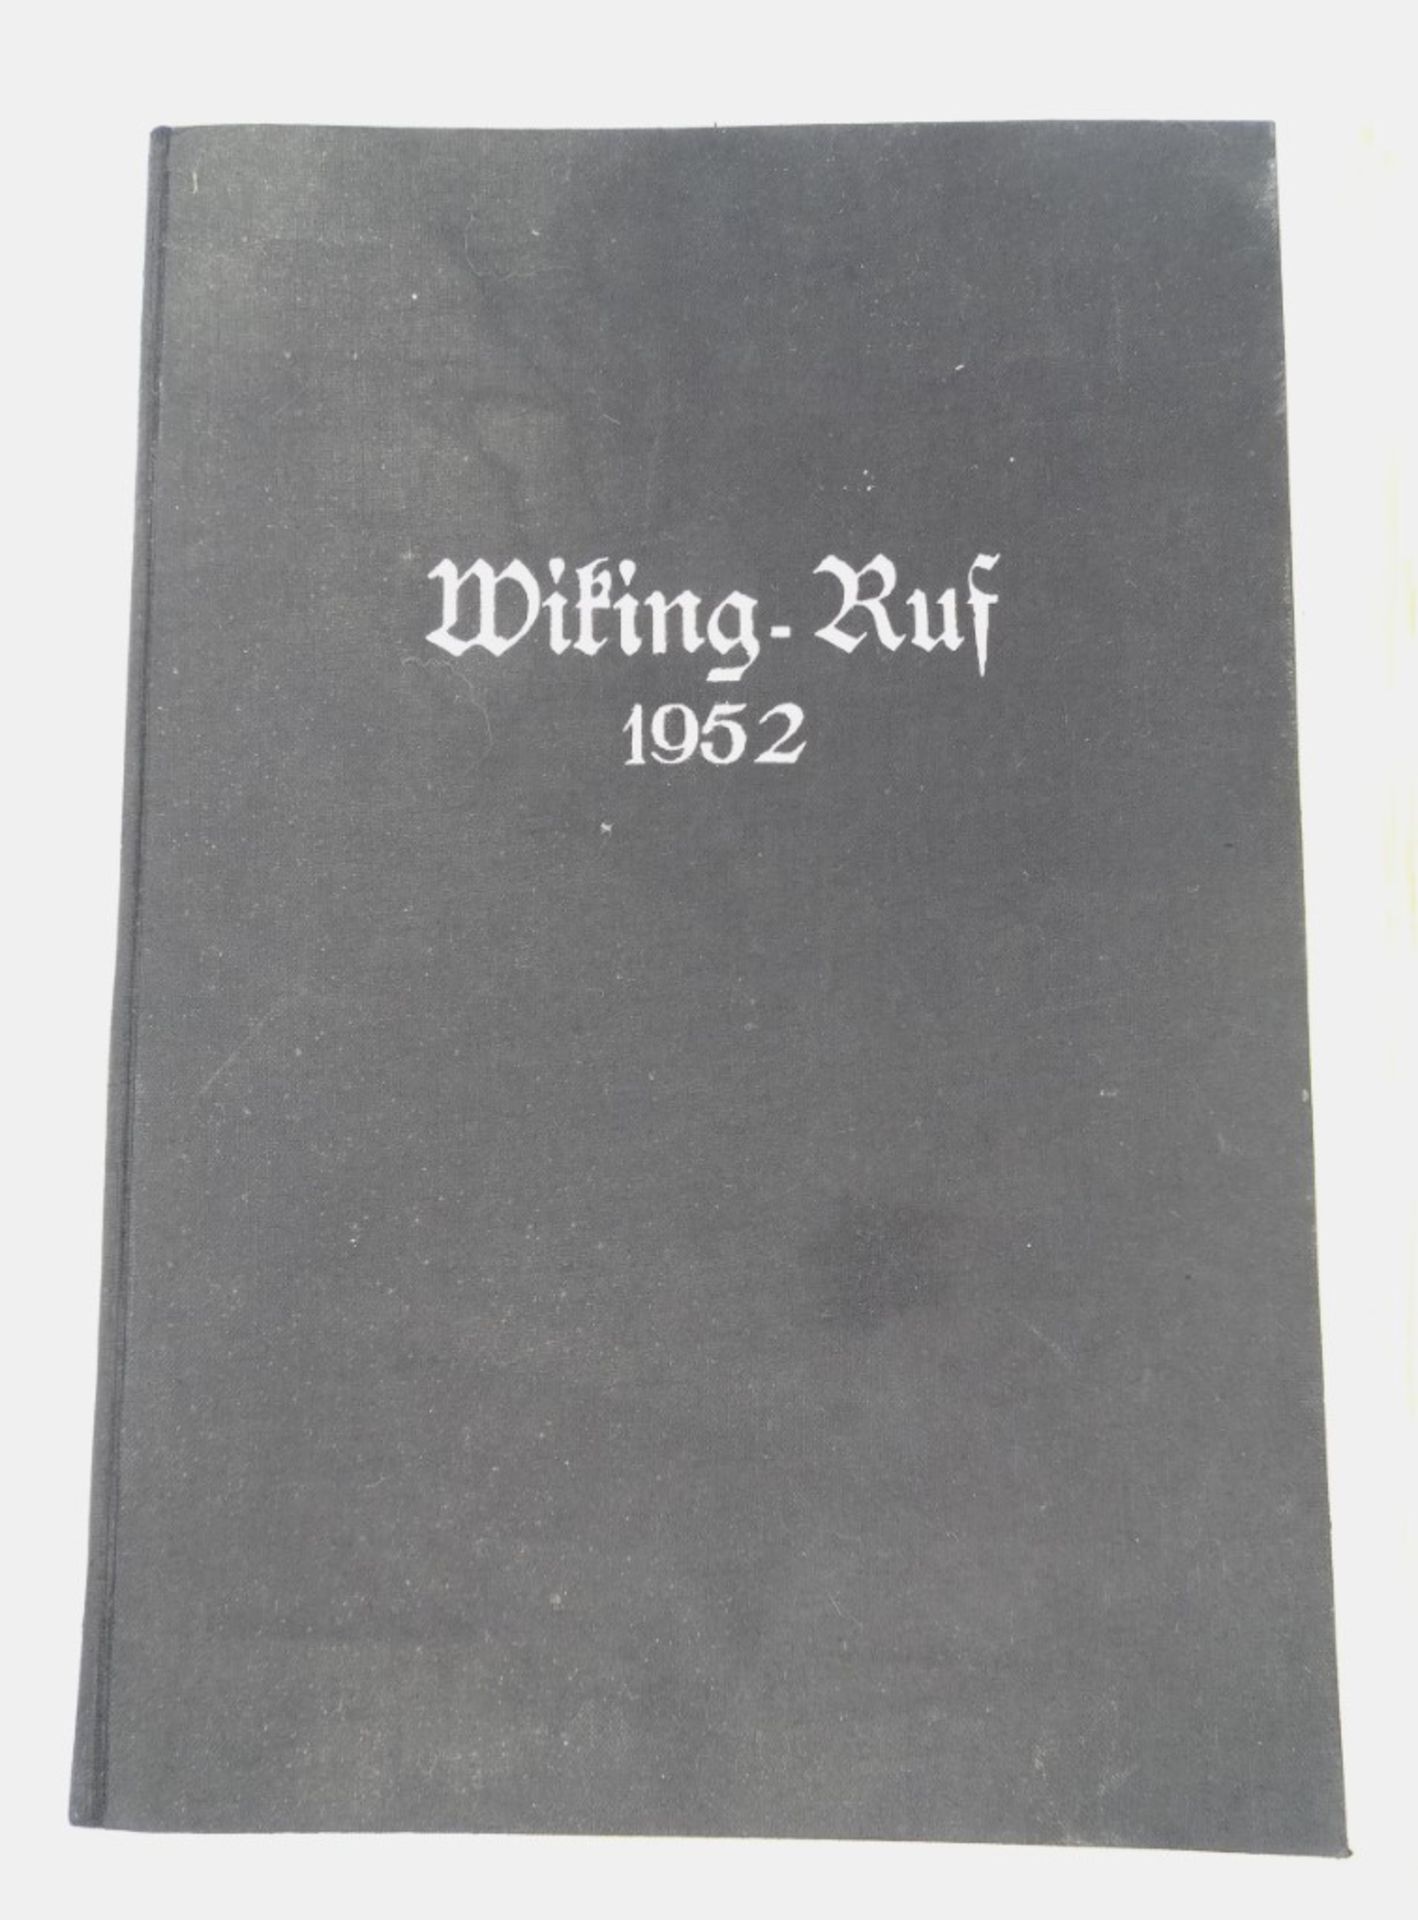 Sammelordner "Wiking-Ruf" 1952 mit 18 Ausgaben von 1951-1953, mit Altersspuren, teilweise leichte B